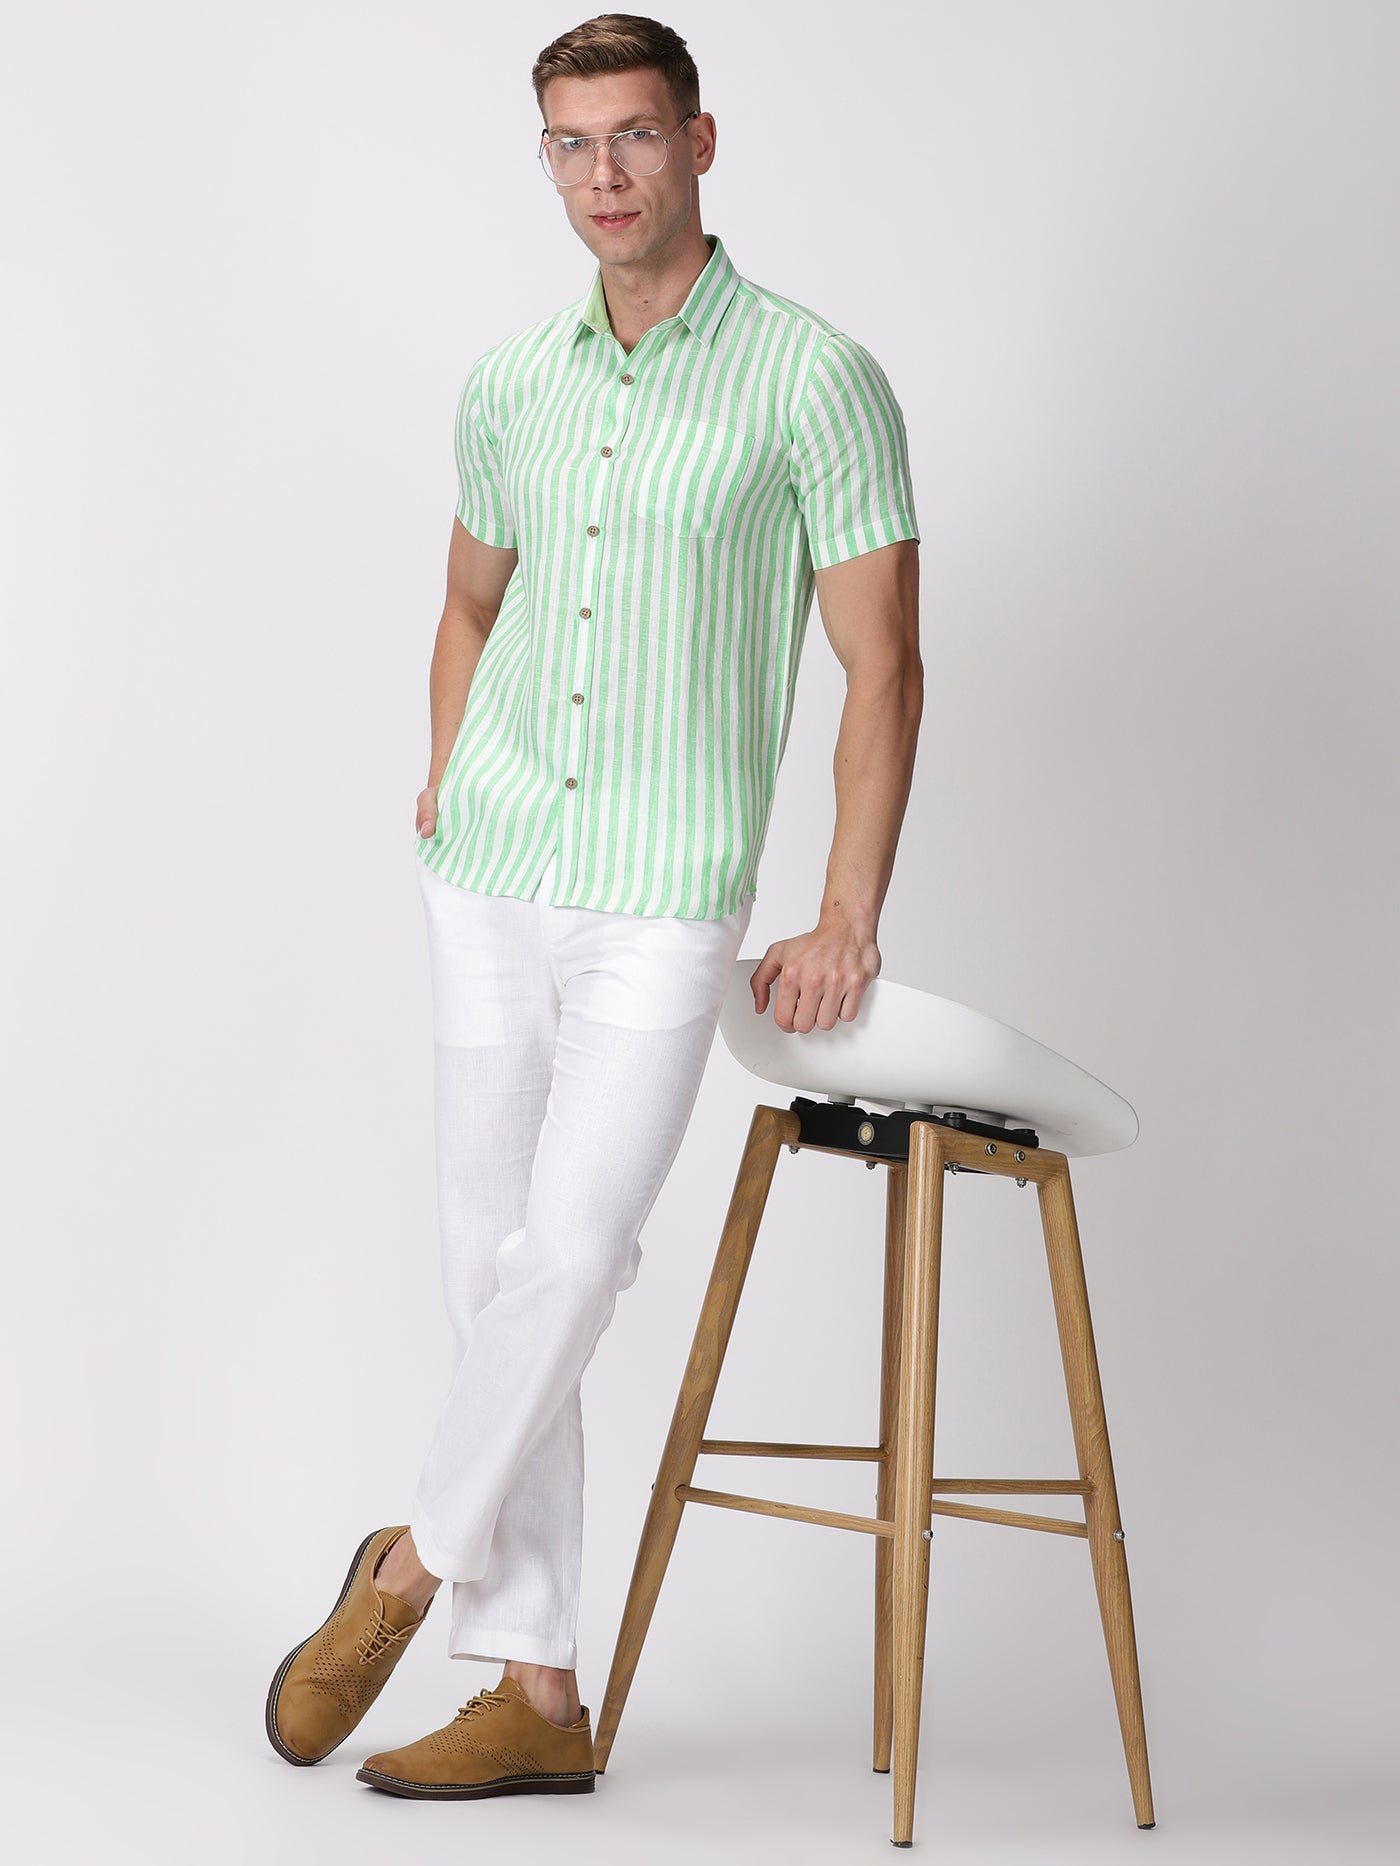 Arthur - Pure Linen Short Sleeve Shirt - Awning Green Stripes